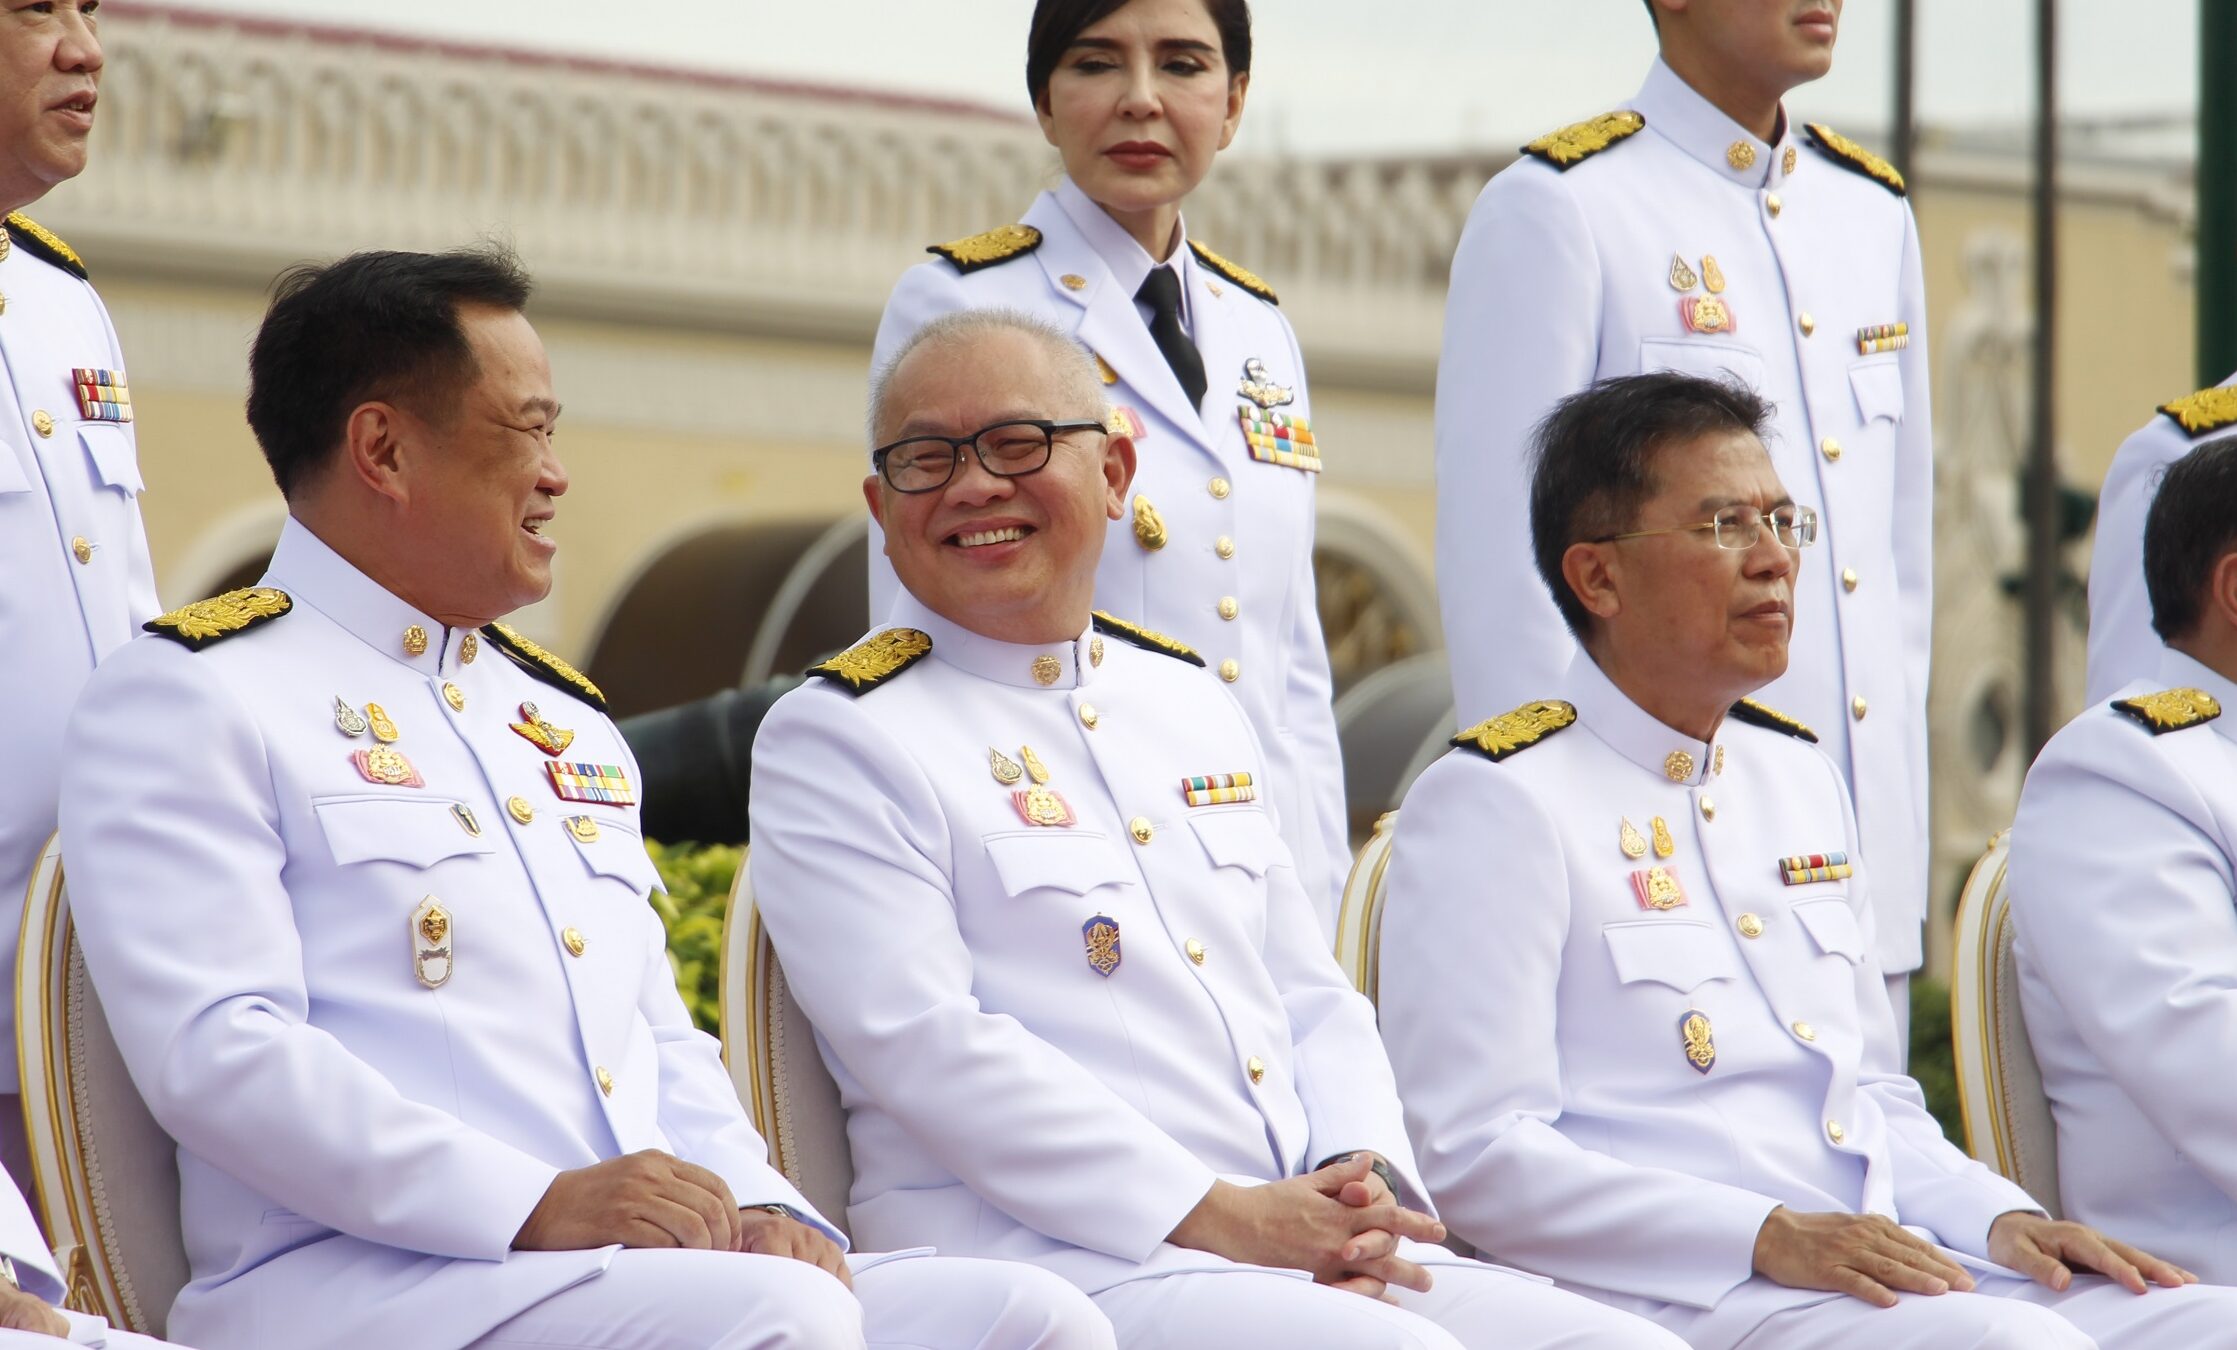 สุพัฒนพงษ์ พันธ์มีเชาว์ (กลาง) ยิ้มแย้ม กับนายอนุทิน ชาญวีรกูล (ซ้าย) ขณะถ่ายภาพหมู่คณะรัฐมนตรีหน้าทำตึกไทยคู่ฟ้า ทำเนียบรัฐบาลวันนี้ (13 ส.ค.)